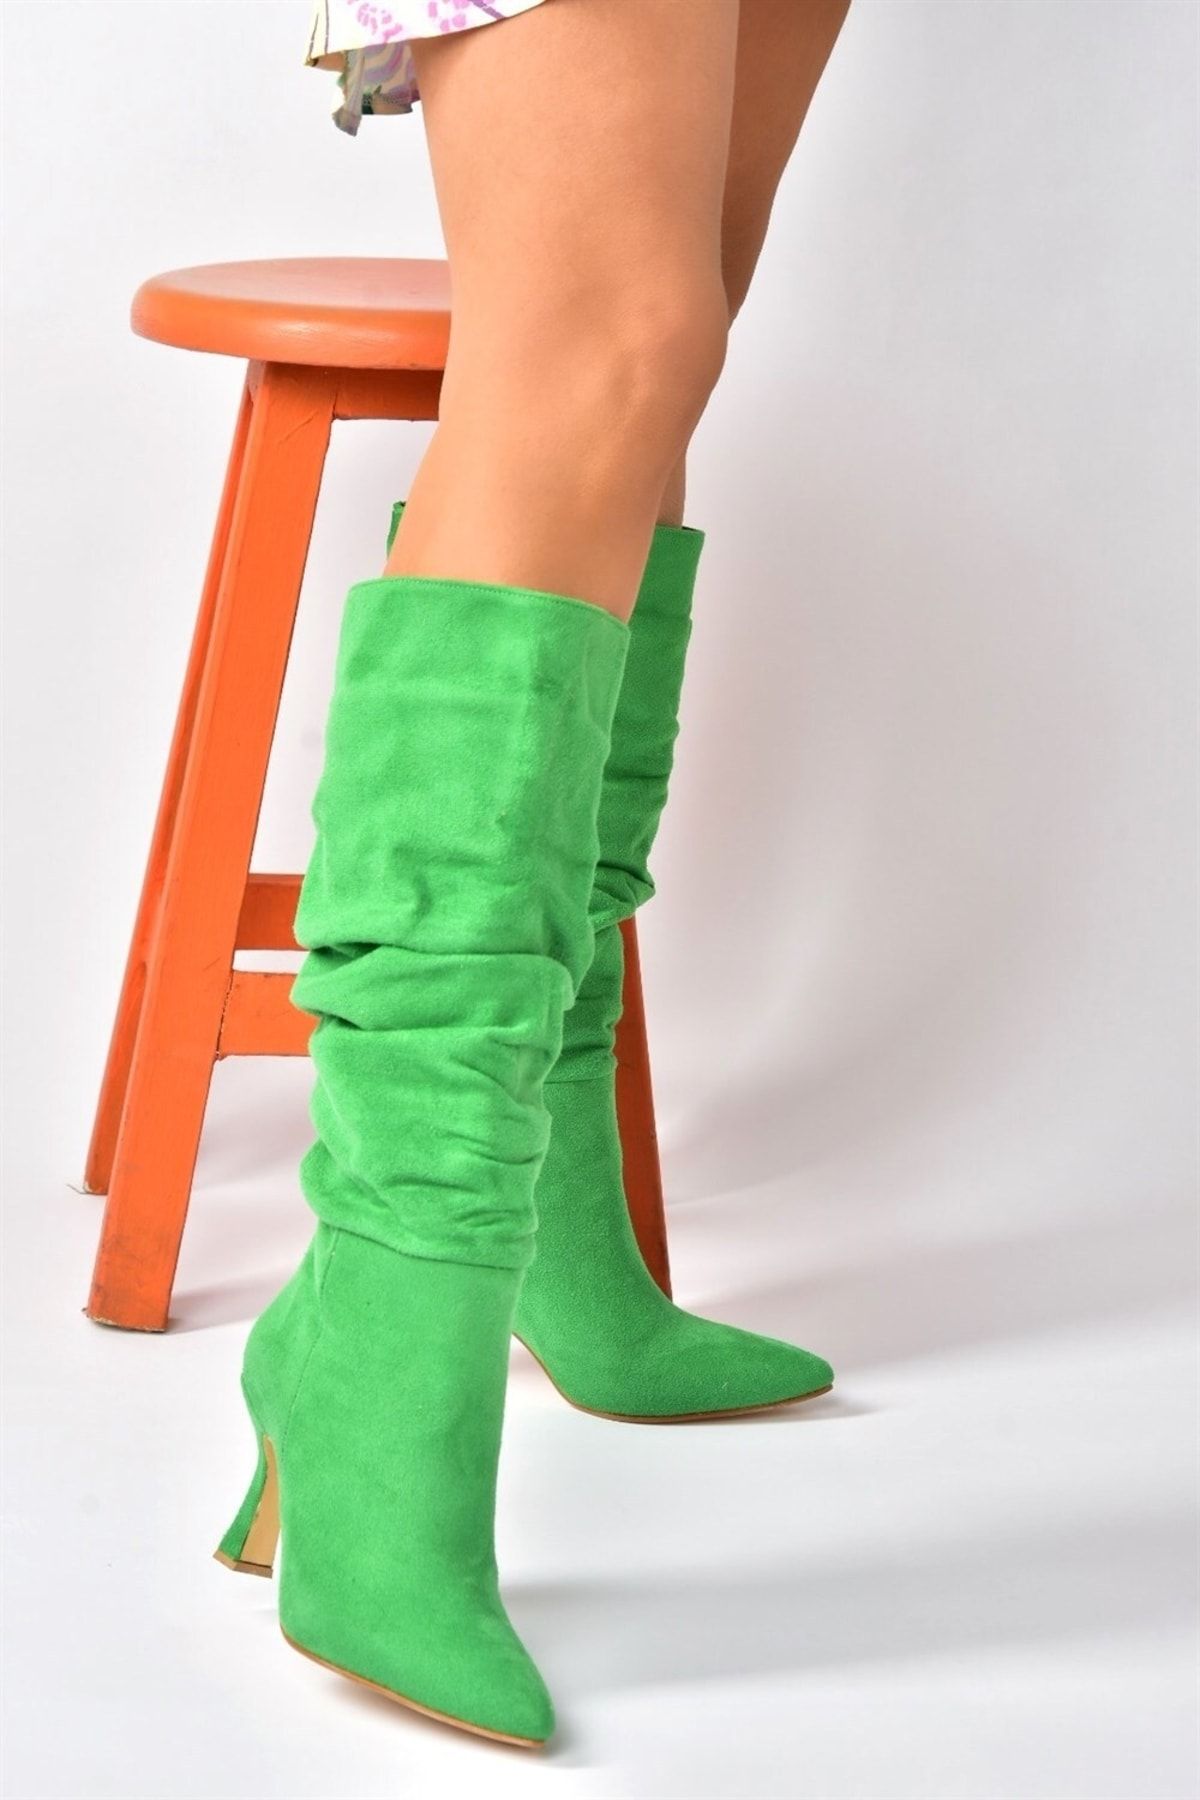 Fox Shoes Yeşil Süet Topuklu Büzgü Model Kadın Ayakkabı N749830002